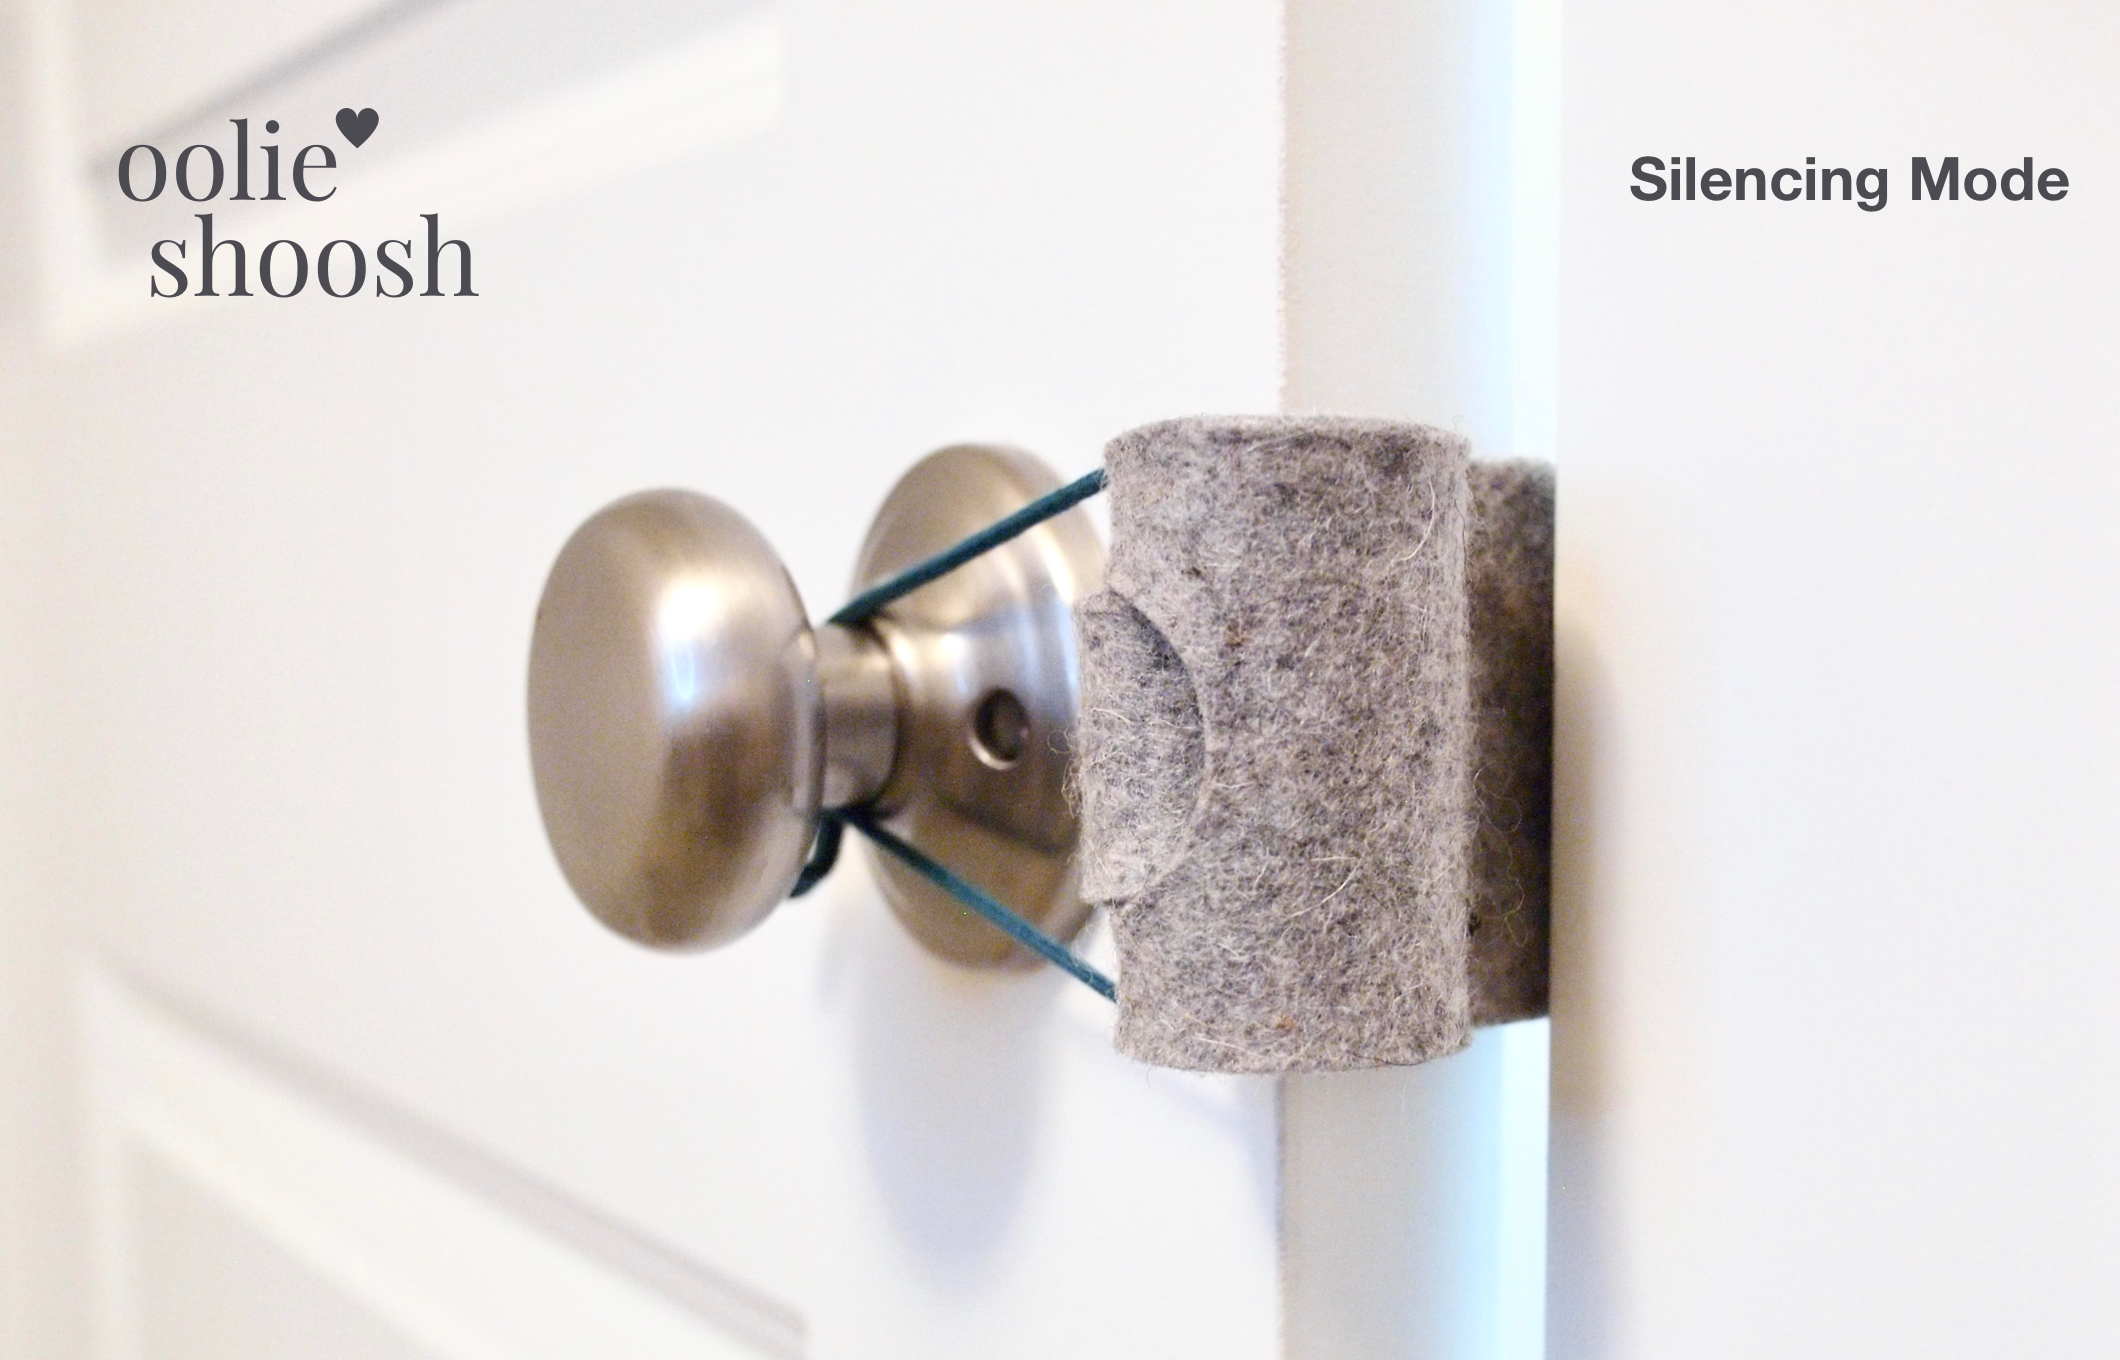 Oolie Shoosh door silencer installed on a door in silencing mode.